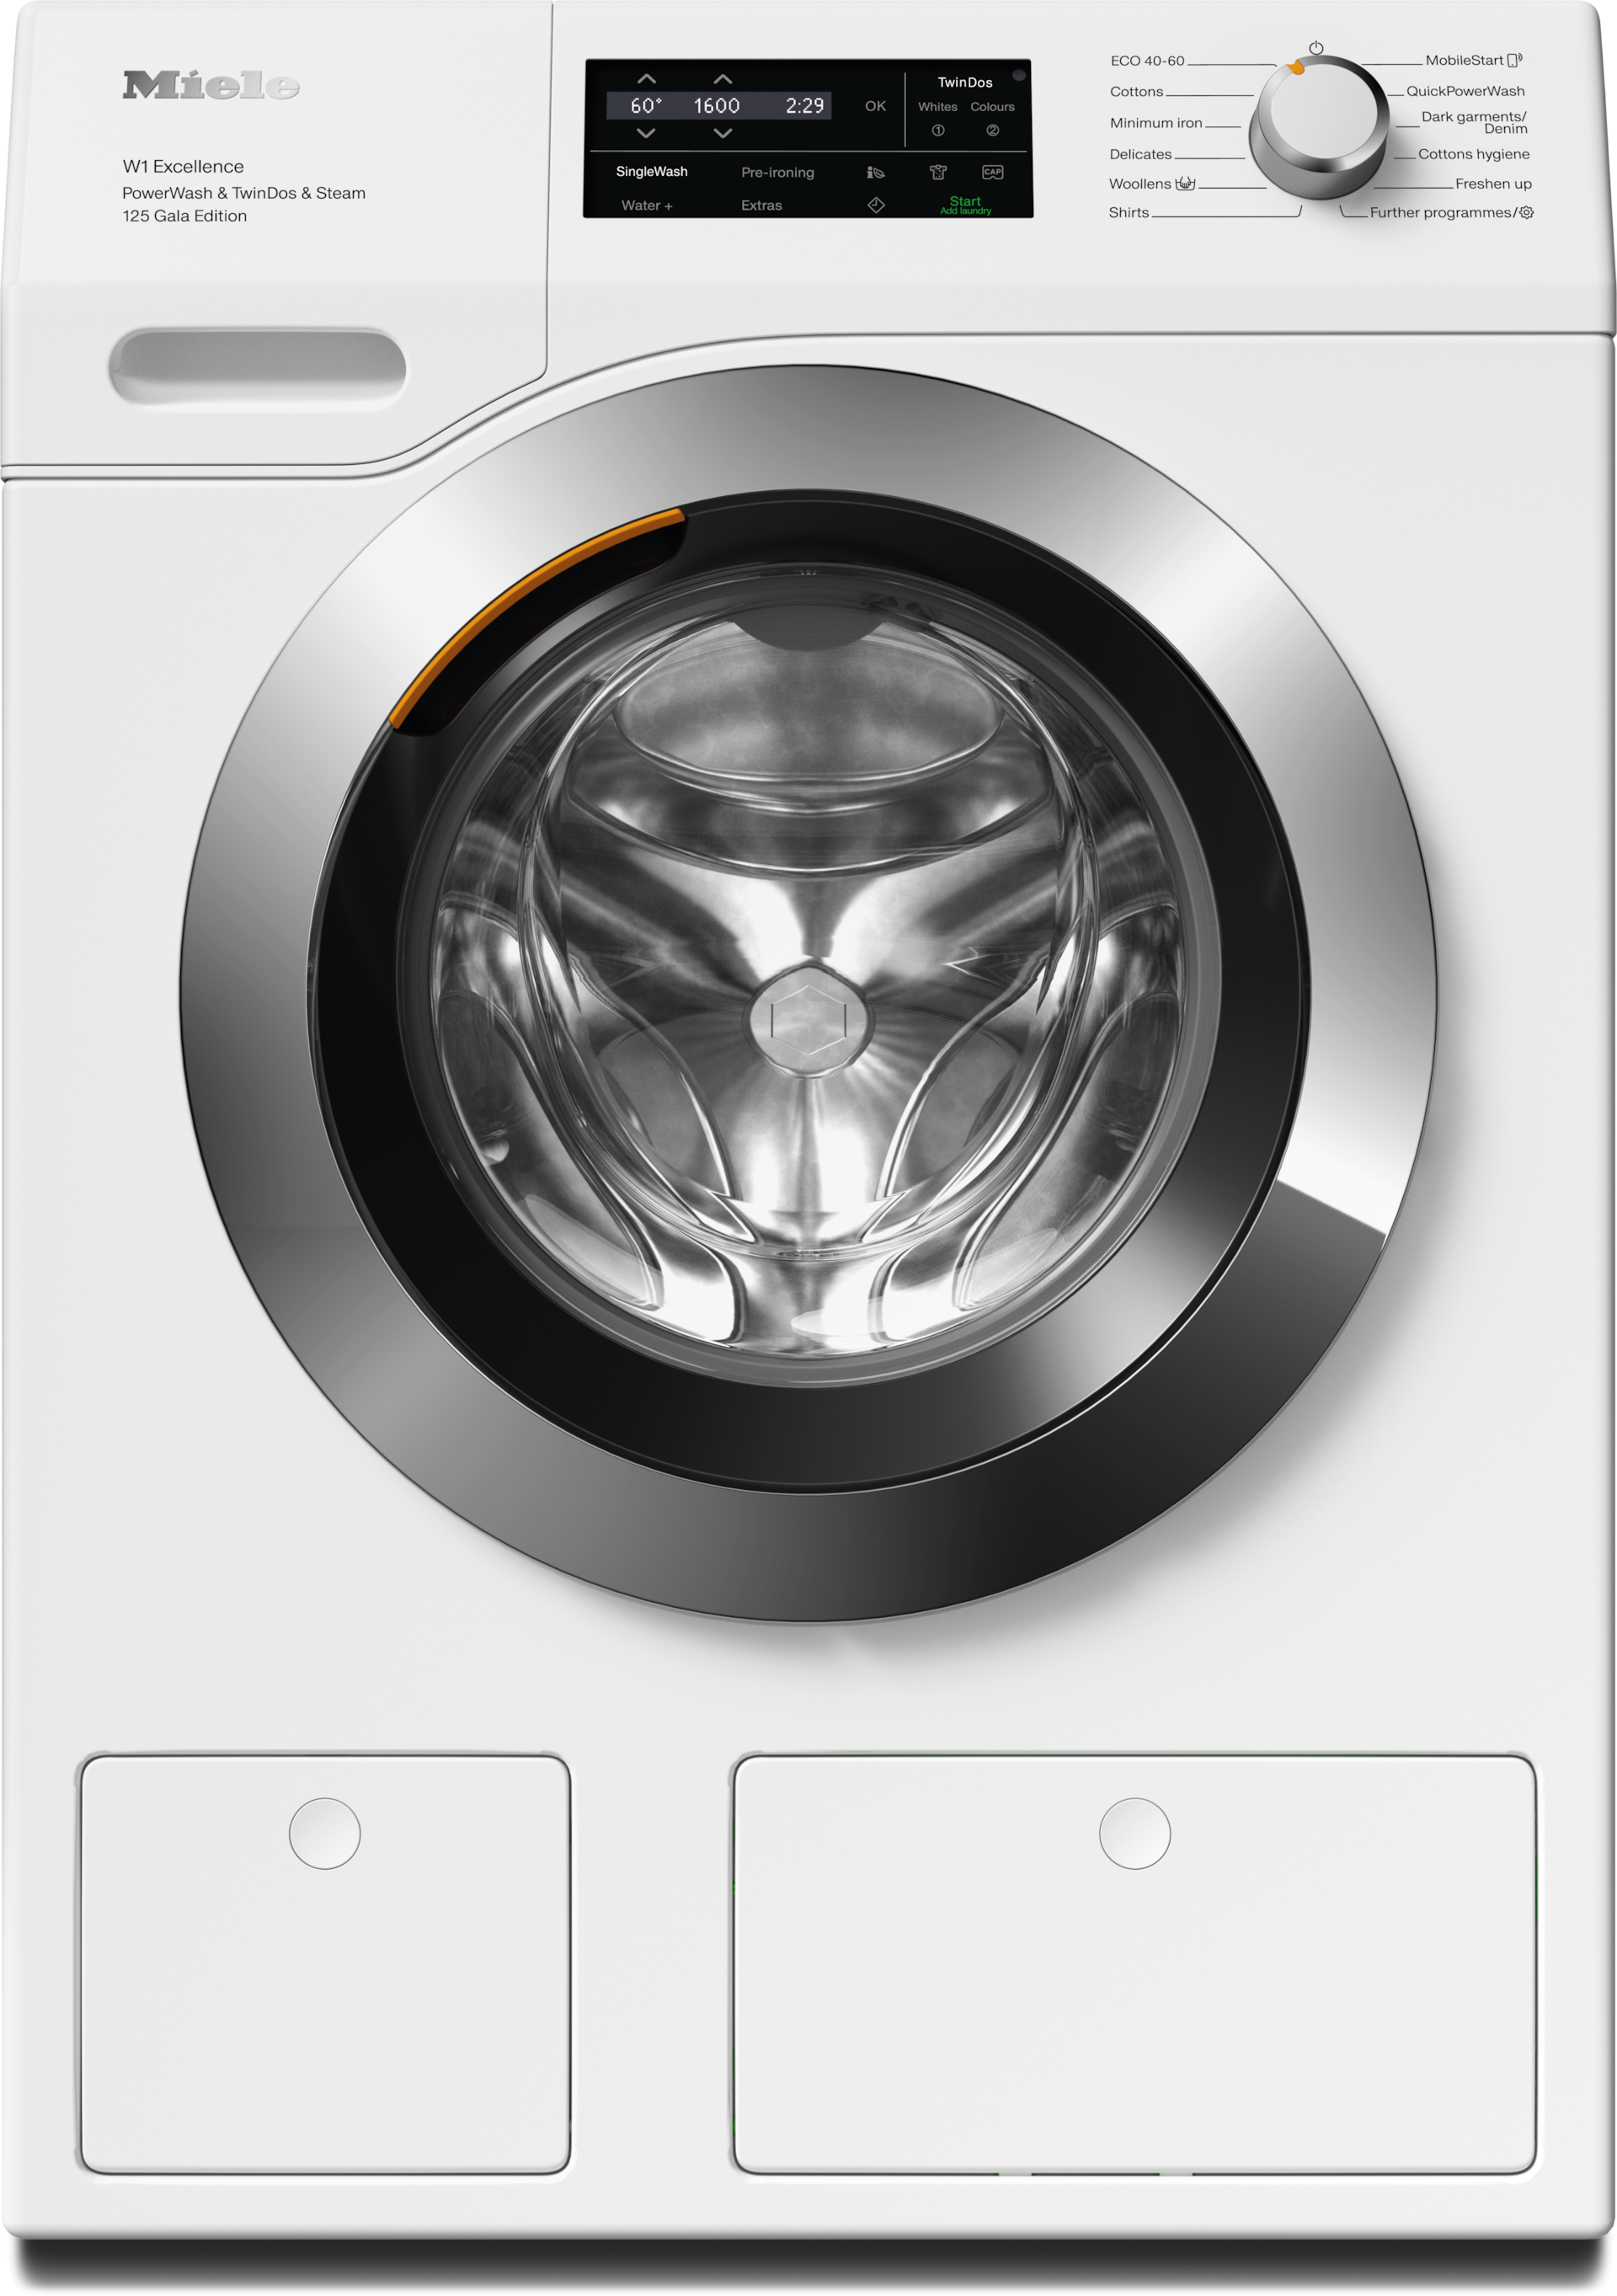 Mașini de spălat - WEI895 WCS 125 Gala Edition - 1